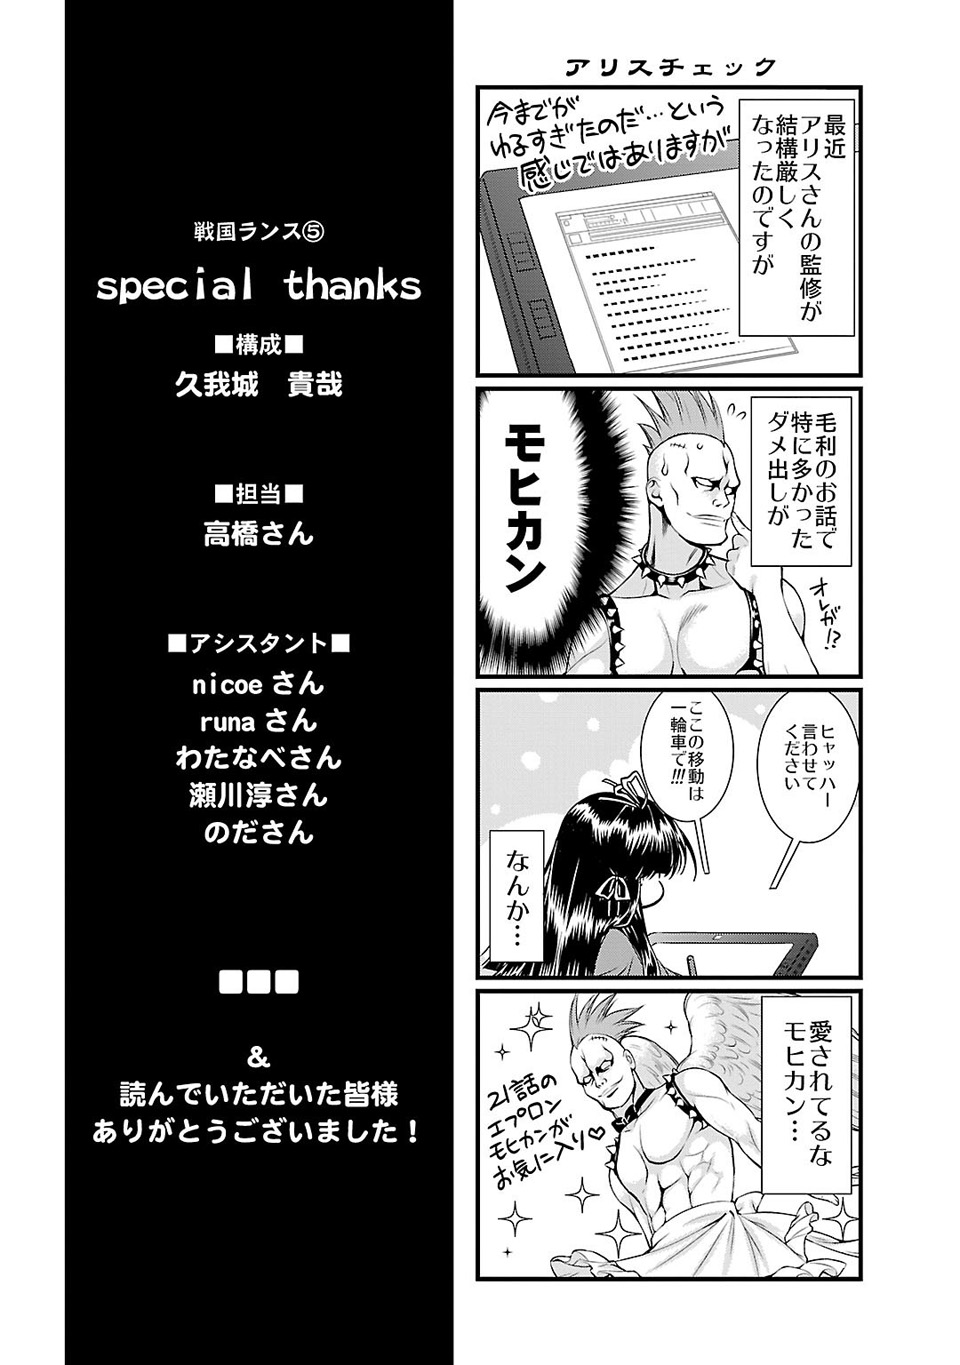 Sengoku Rance Vol. 5 Ch. 25.5 Shame of an Unendurable Disgrace